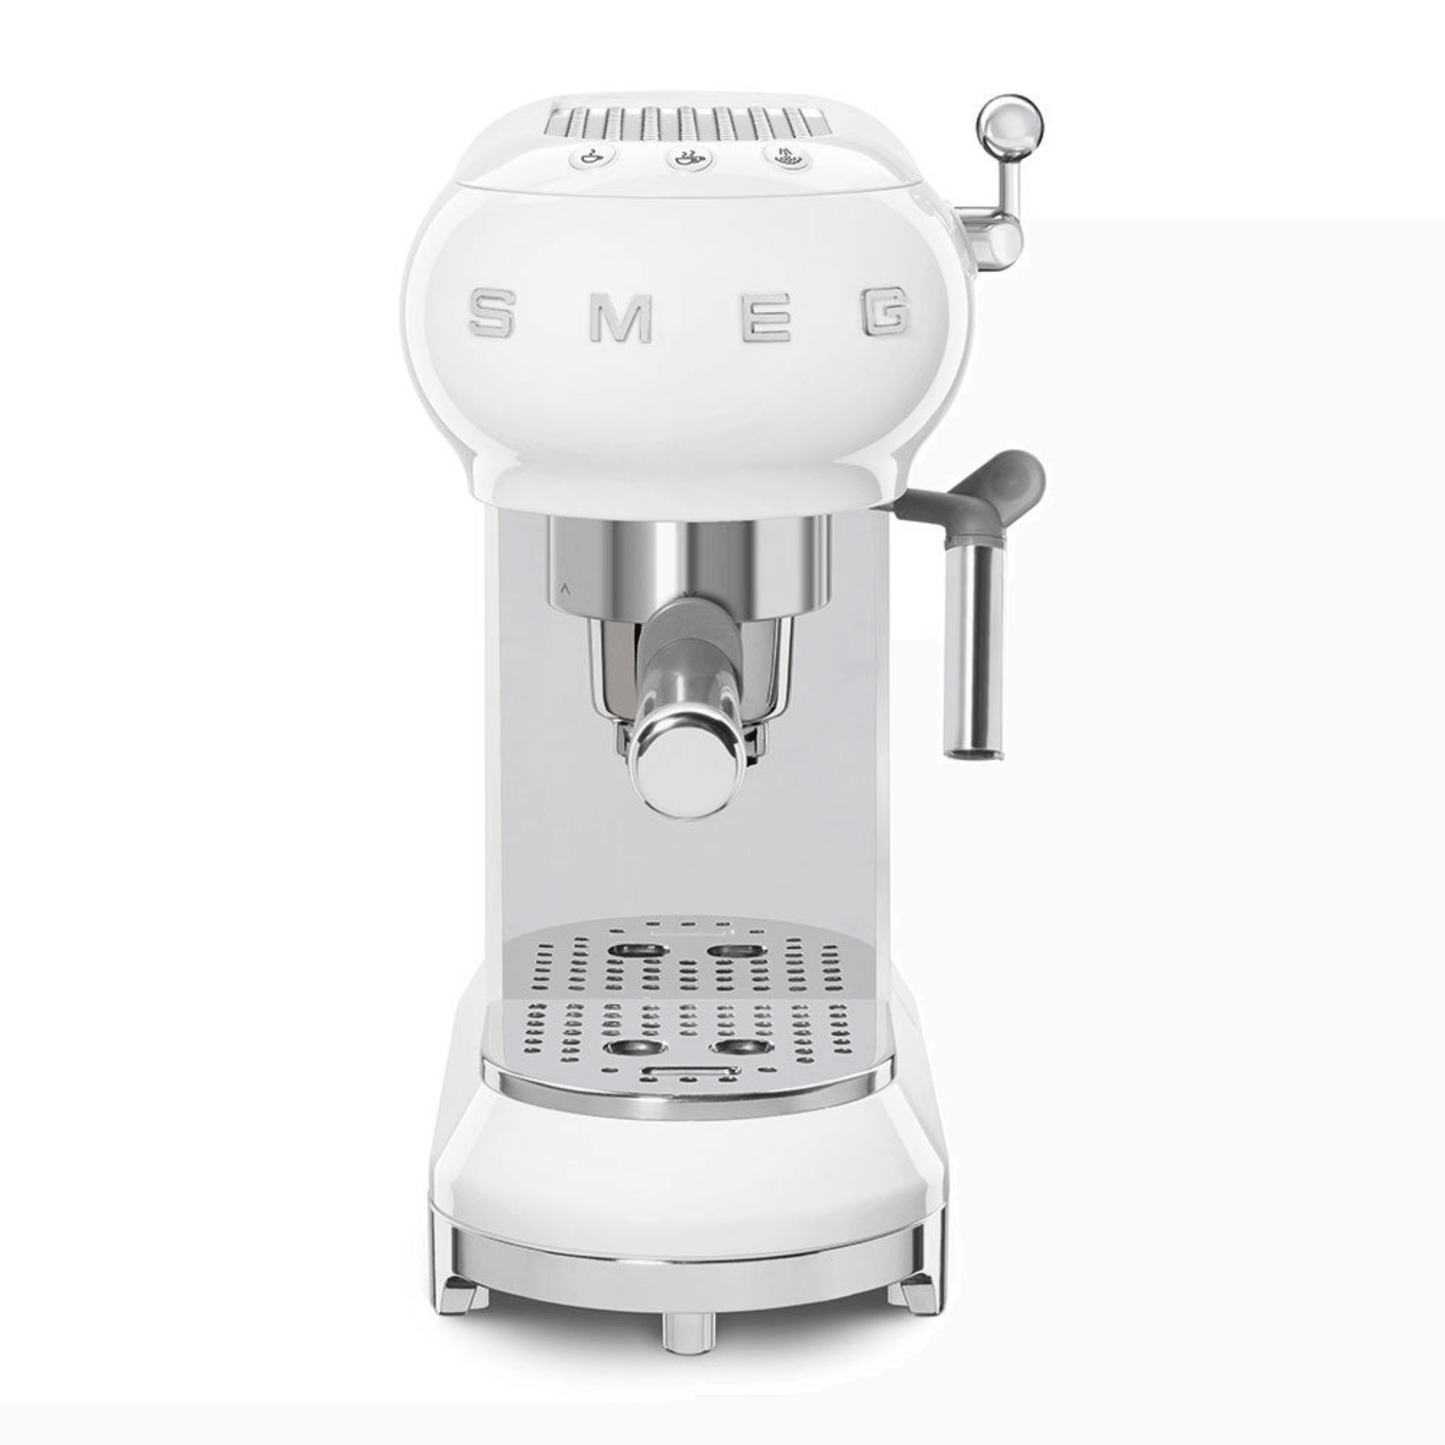 Espresso Manual Coffee Machine Retro-style